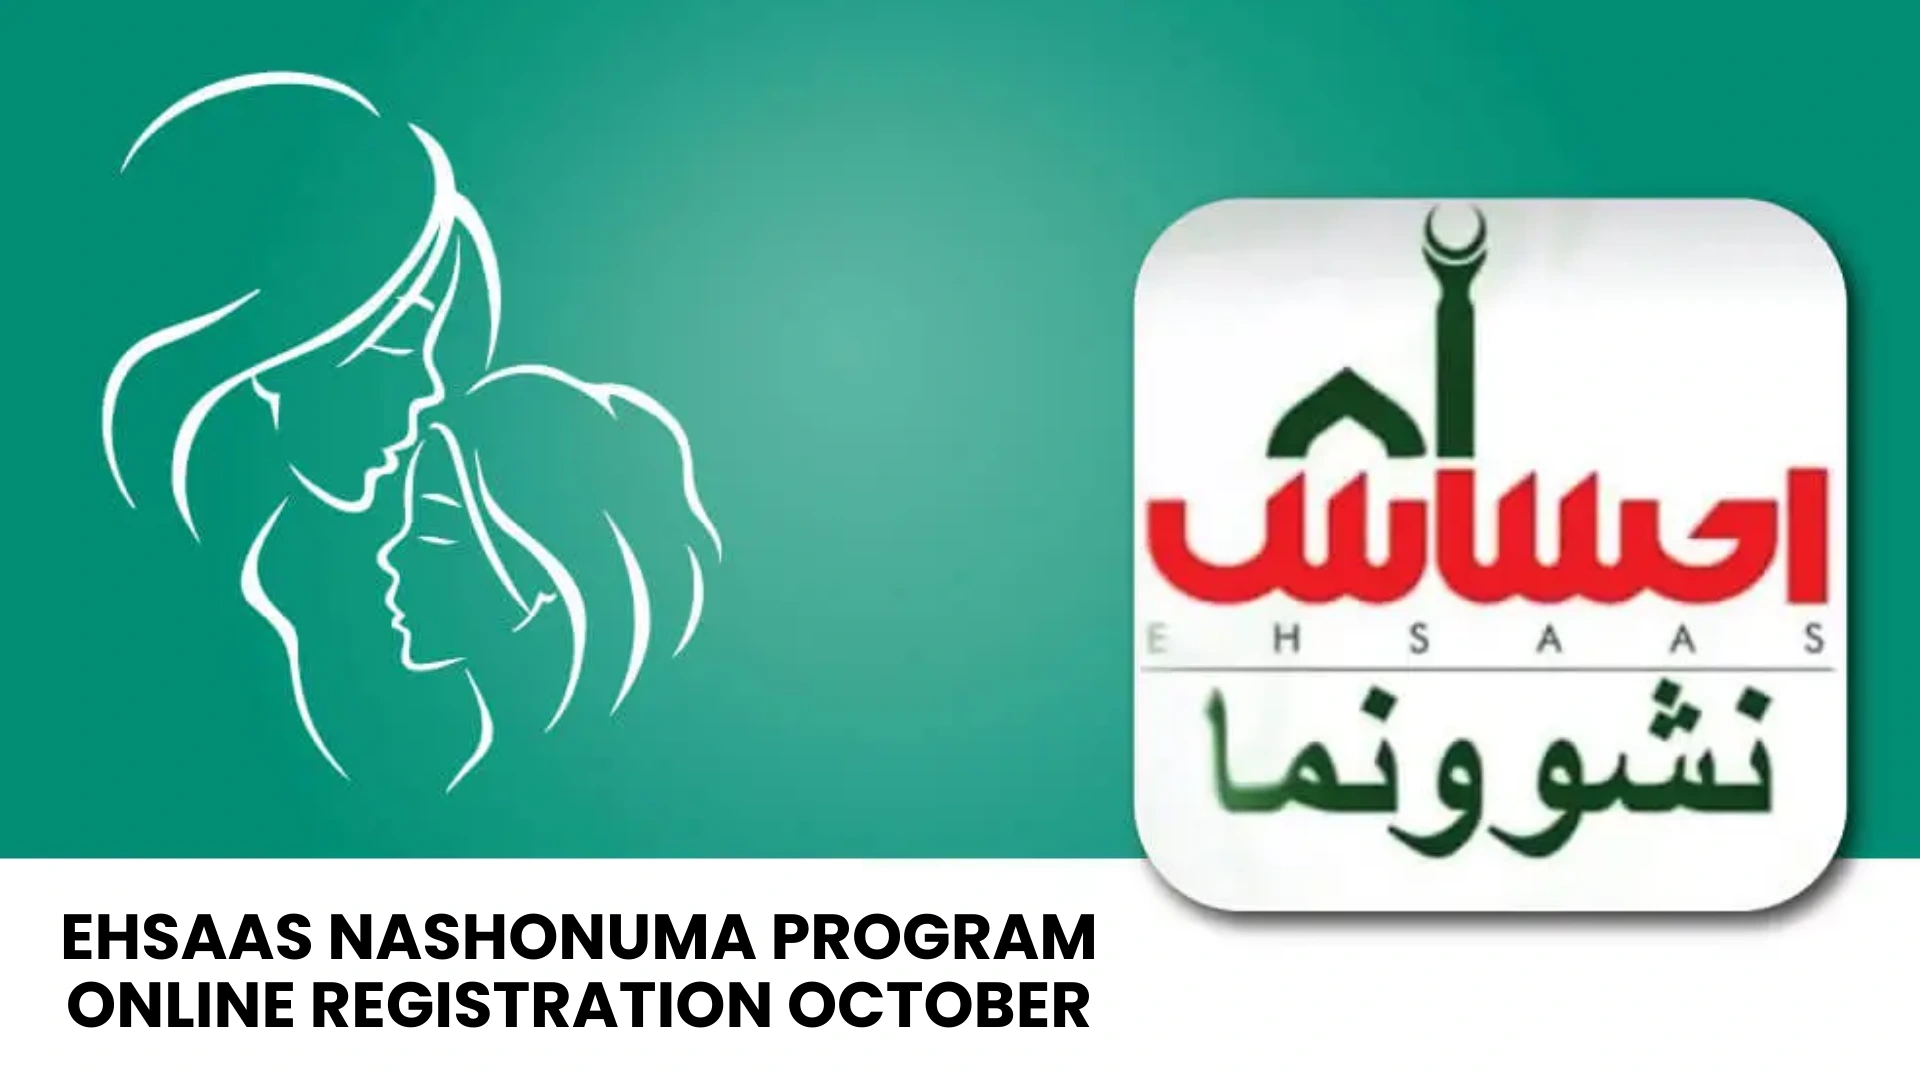 Ehsaas Nashonuma Program Online Registration October